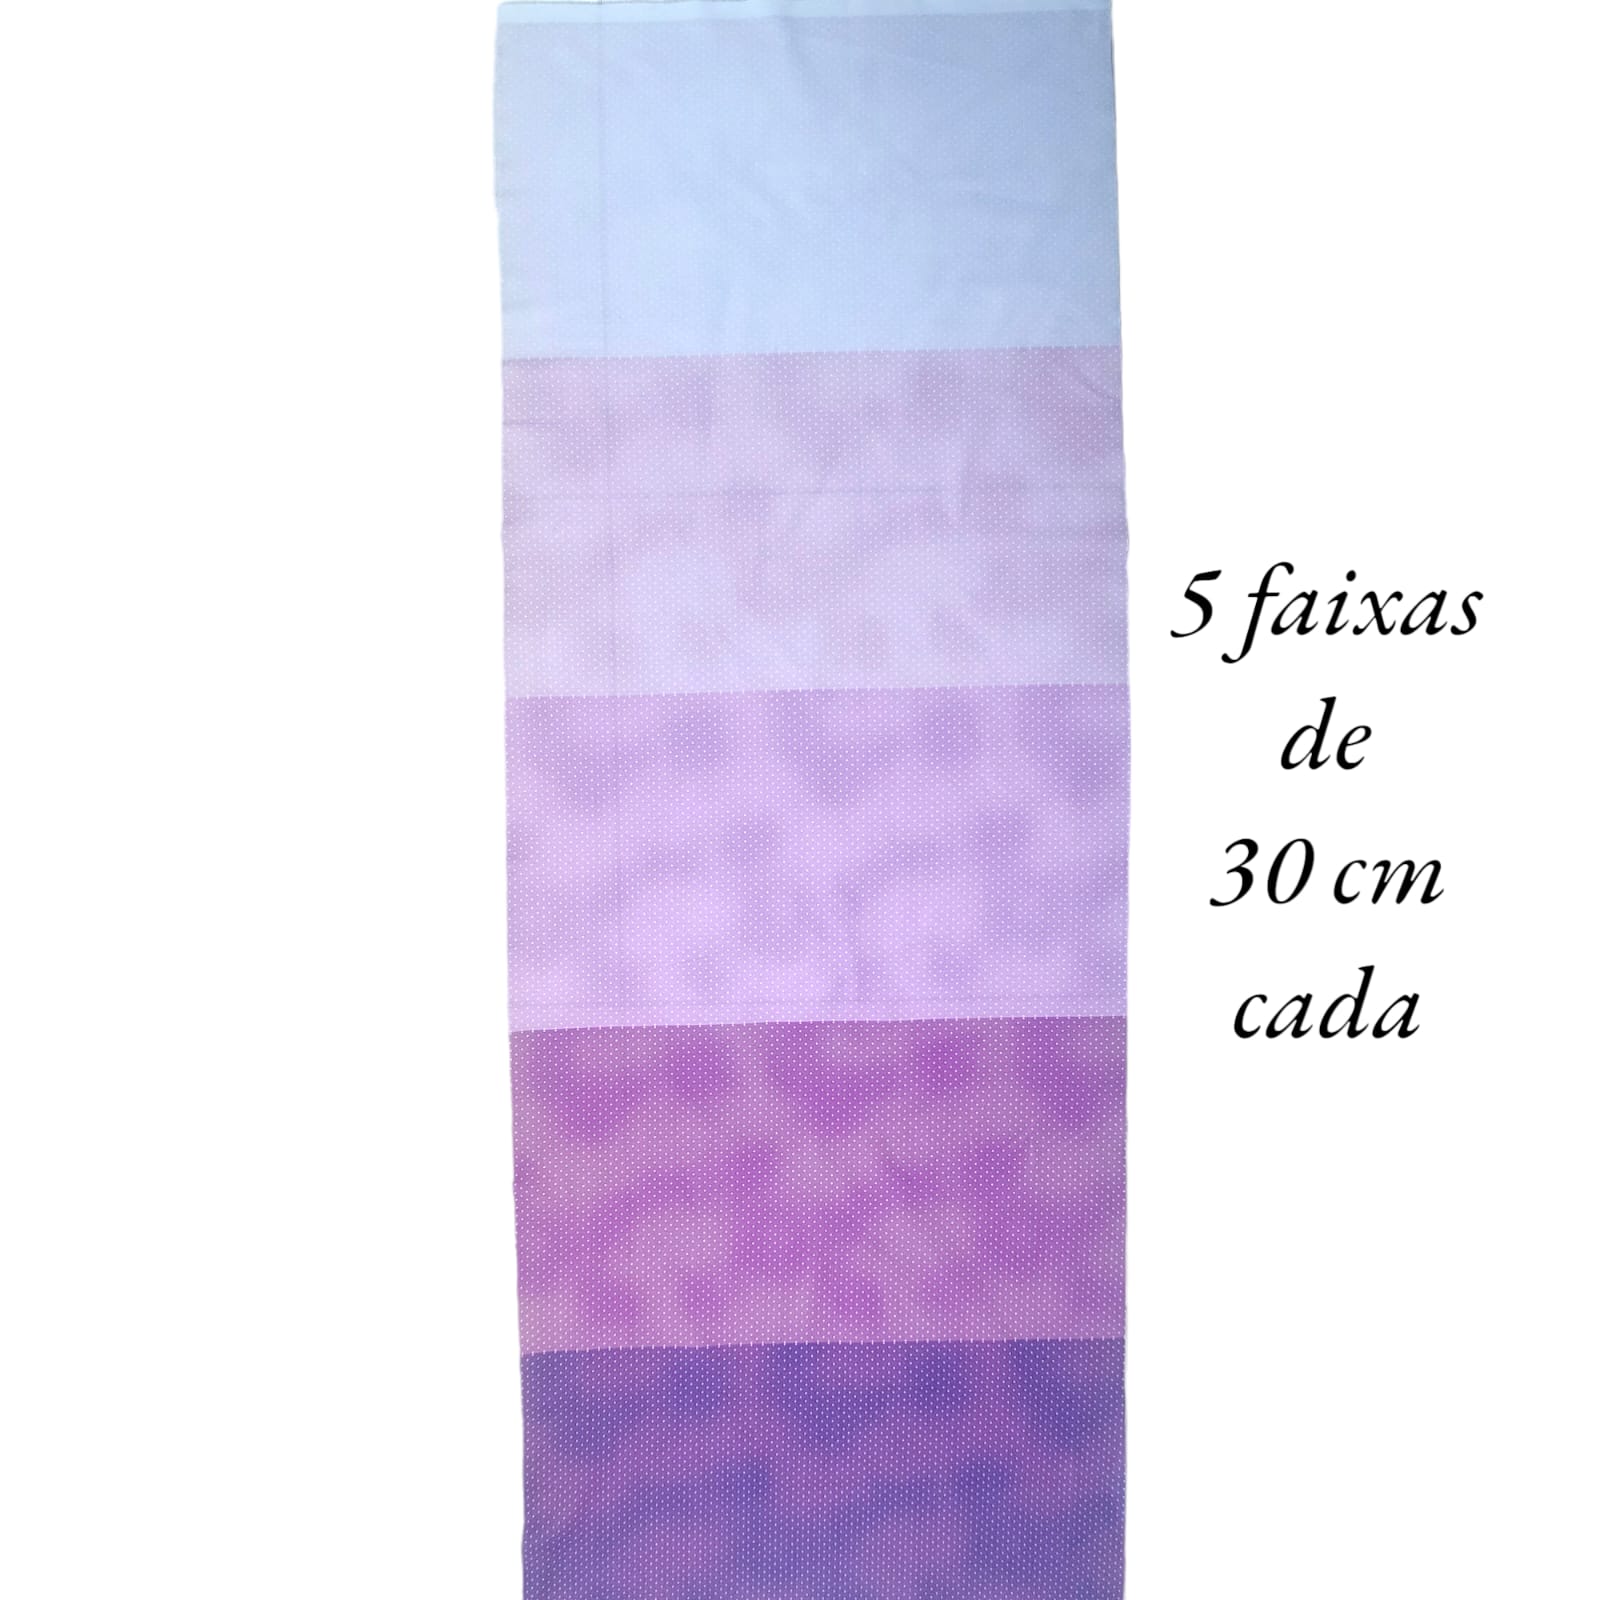 Tecido Tricoline digital - faixas de poa branco fd. roxo - Col. Basics for All - Fernando Maluhy  (50x1,50 cm)                           